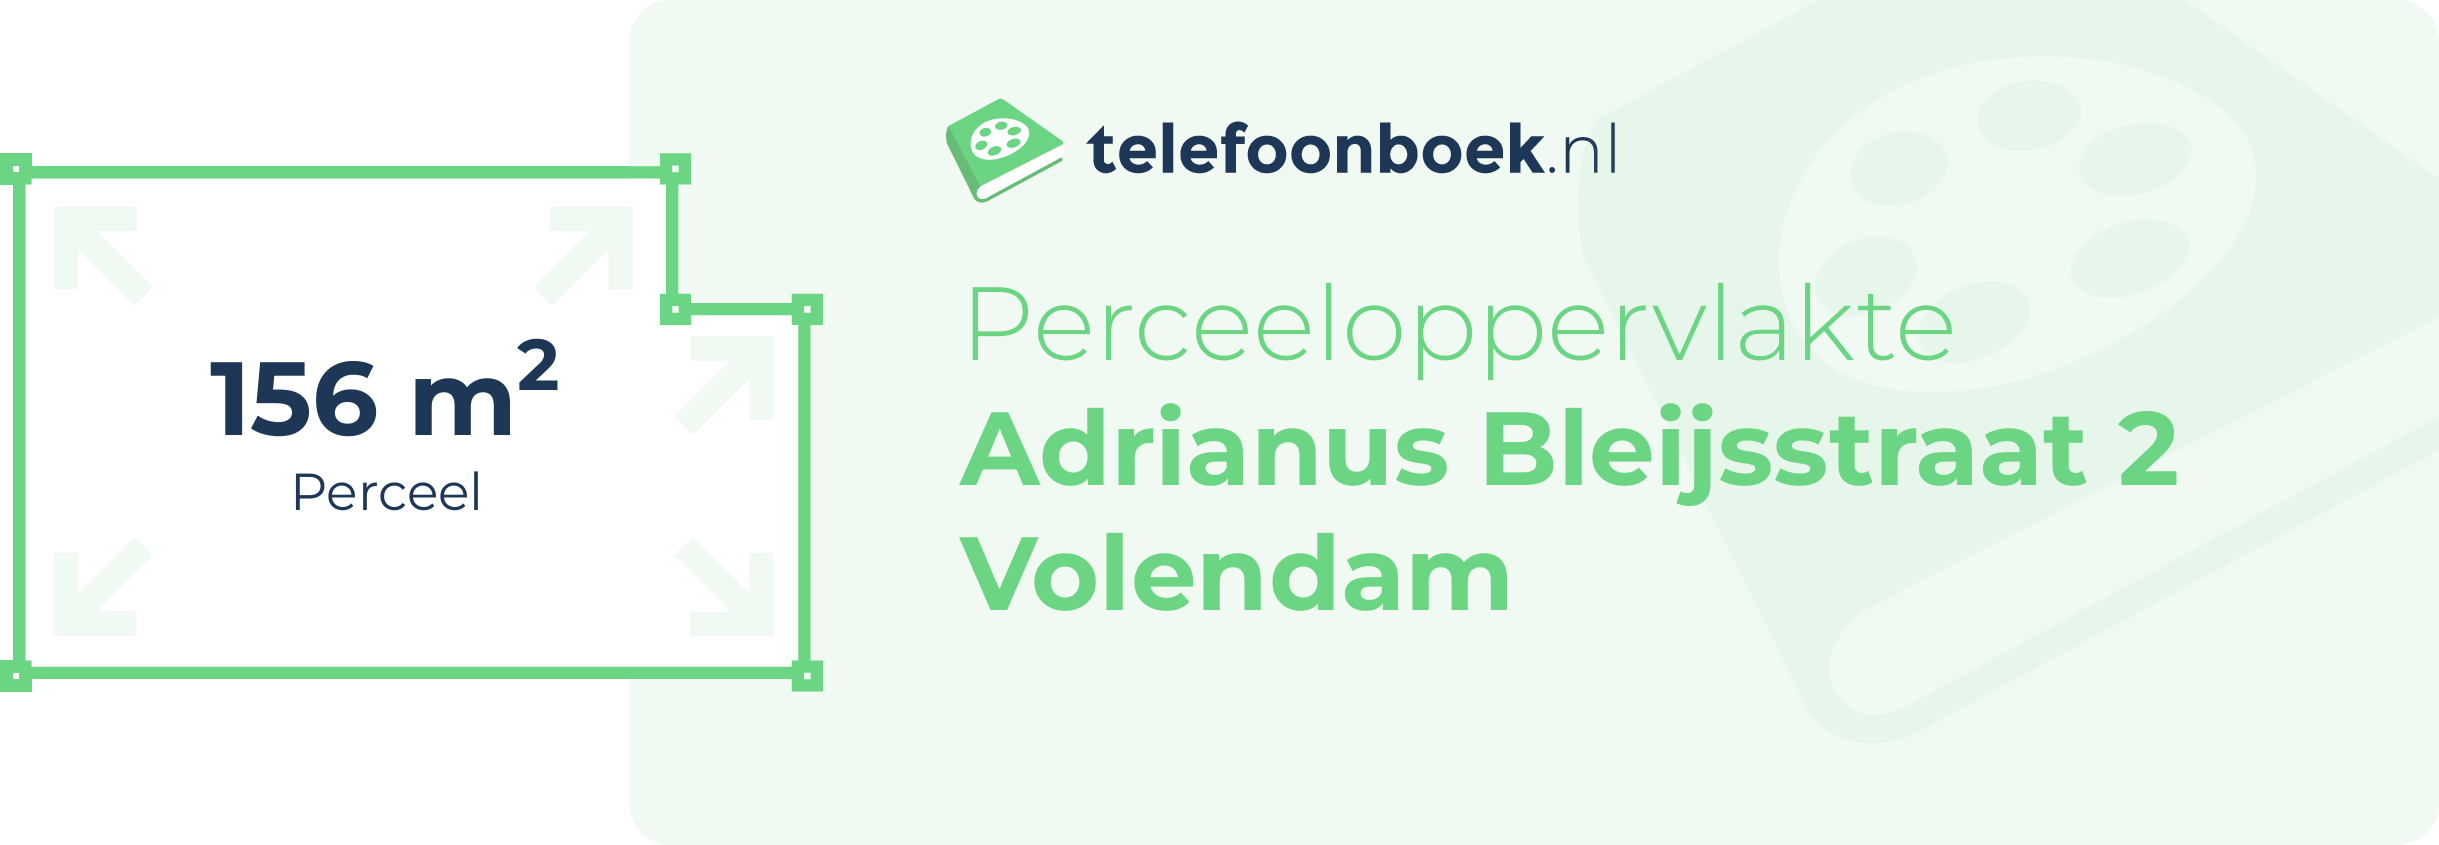 Perceeloppervlakte Adrianus Bleijsstraat 2 Volendam